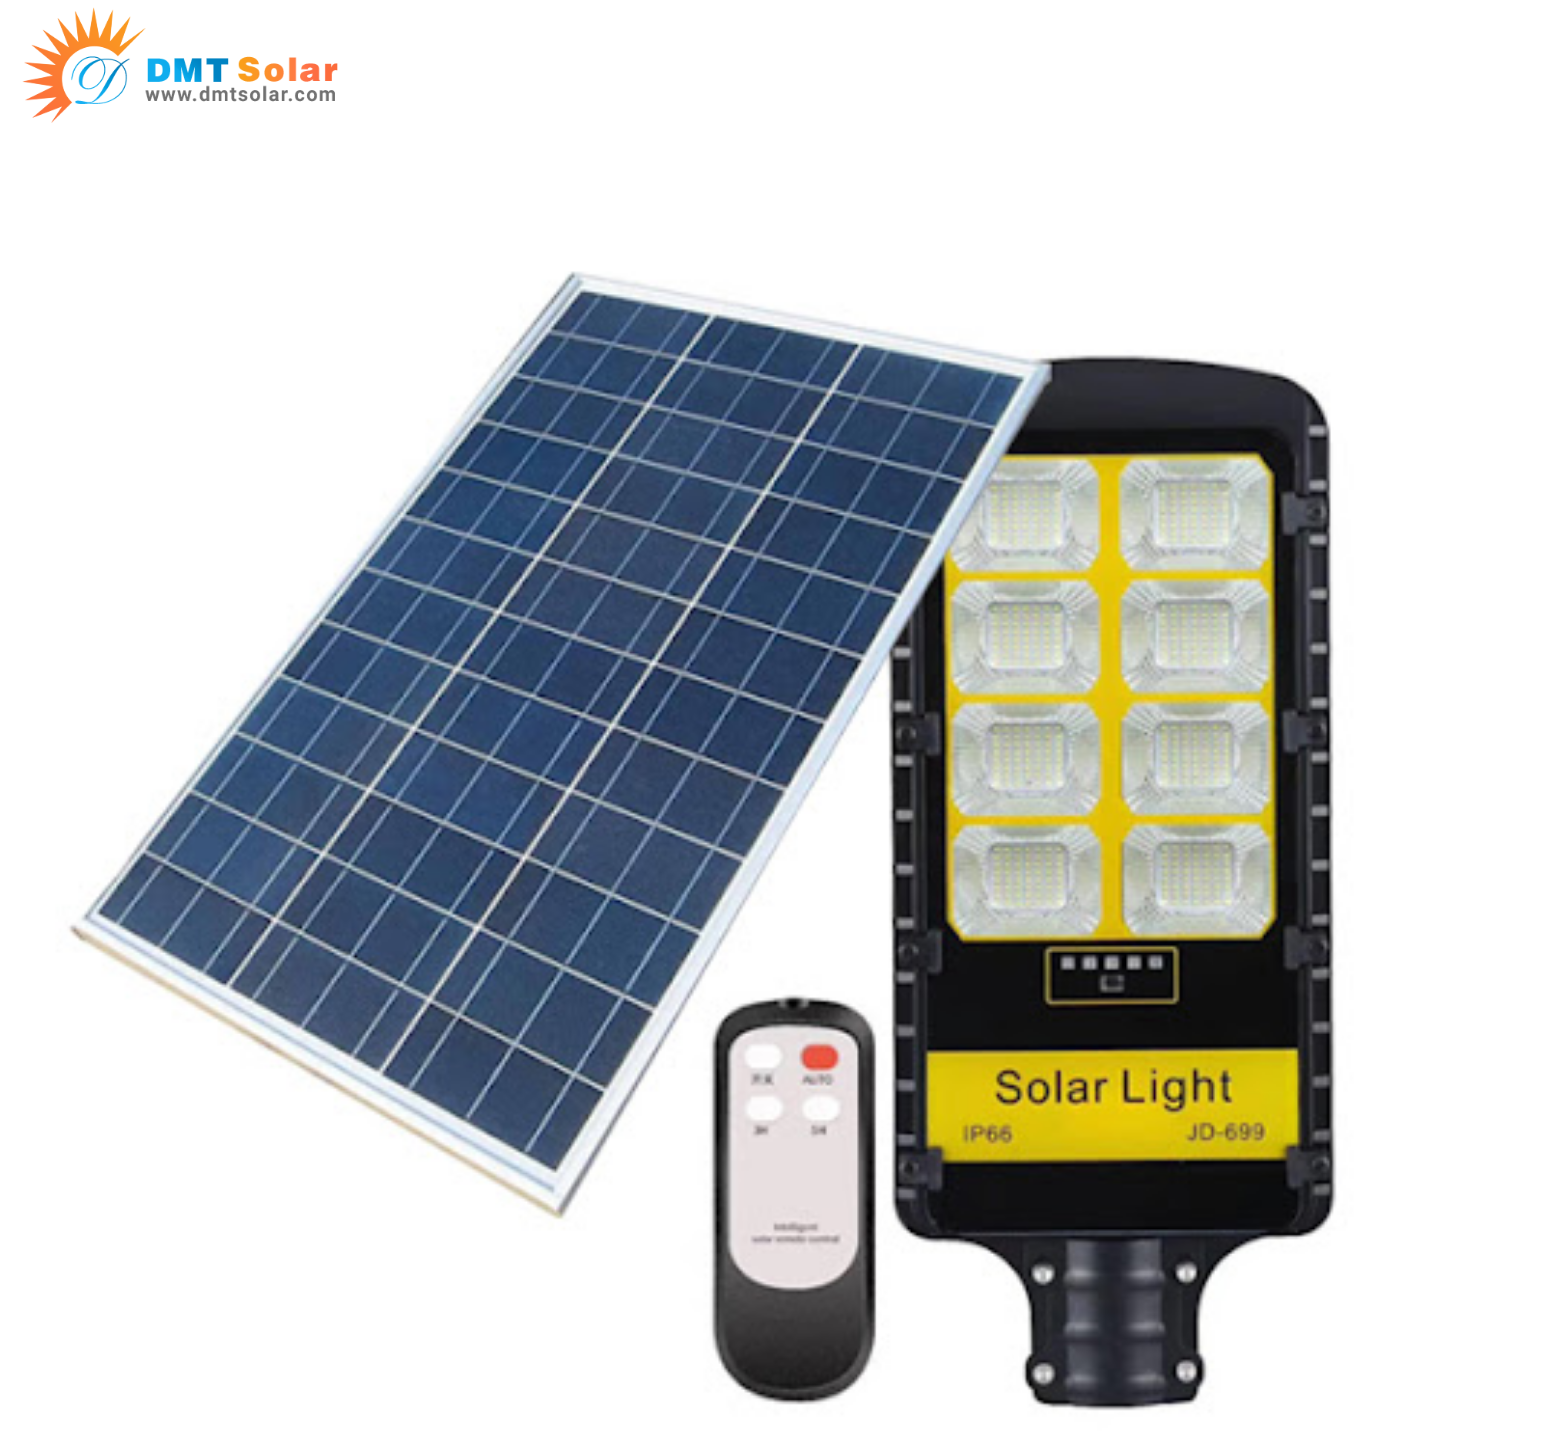 [Giải đáp] Có nên mua đèn đường năng lượng mặt trời JD-699 giá rẻ?